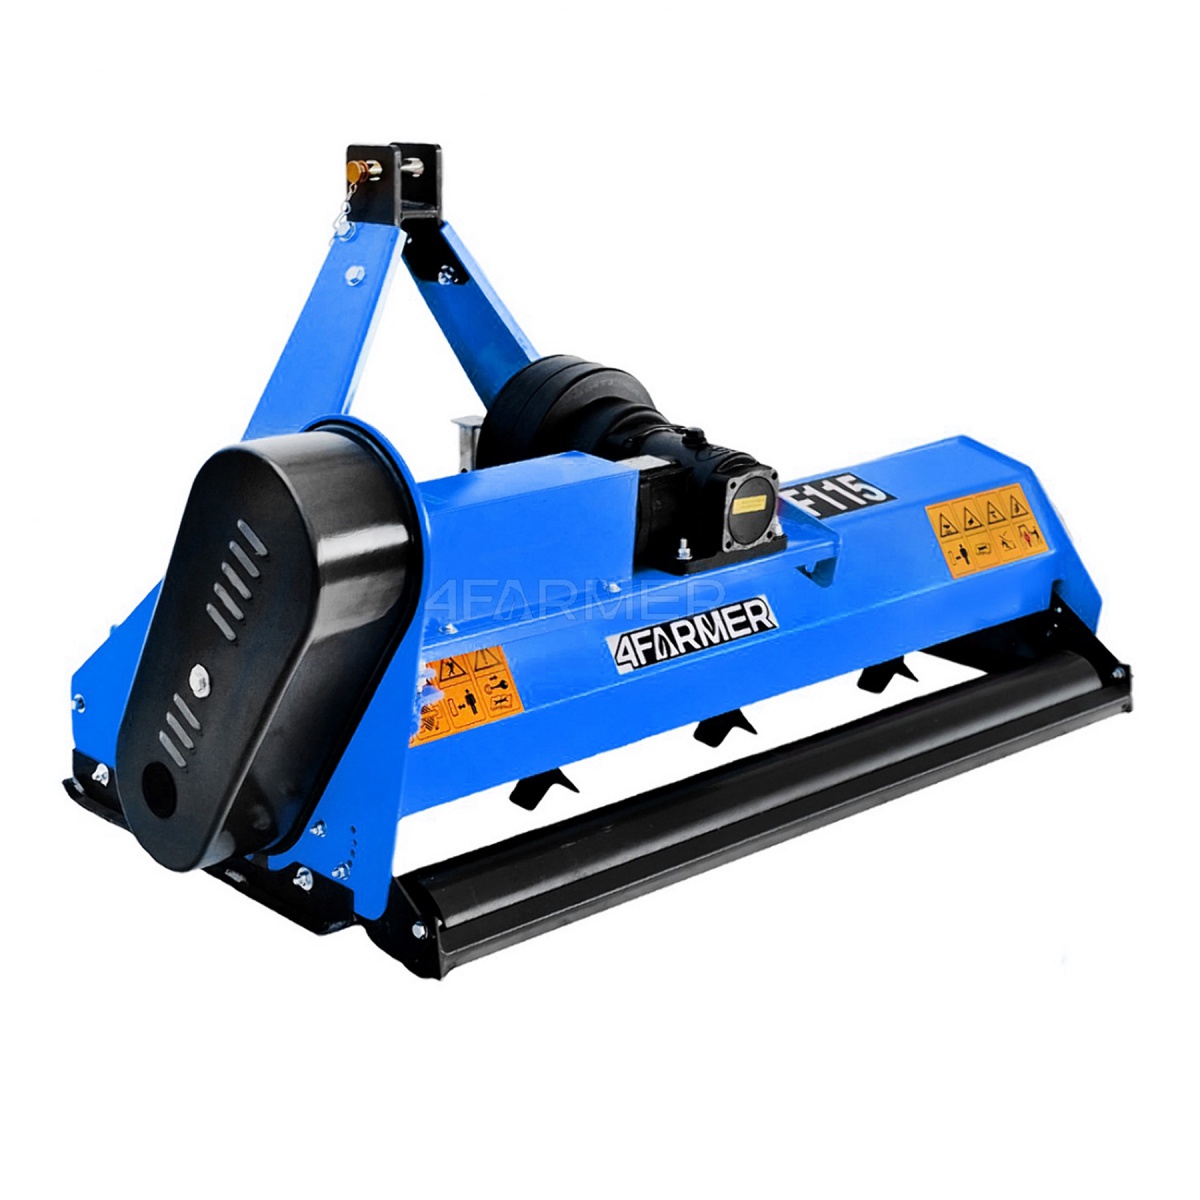 flail movers - Flail mower EF 125 4FARMER - blue